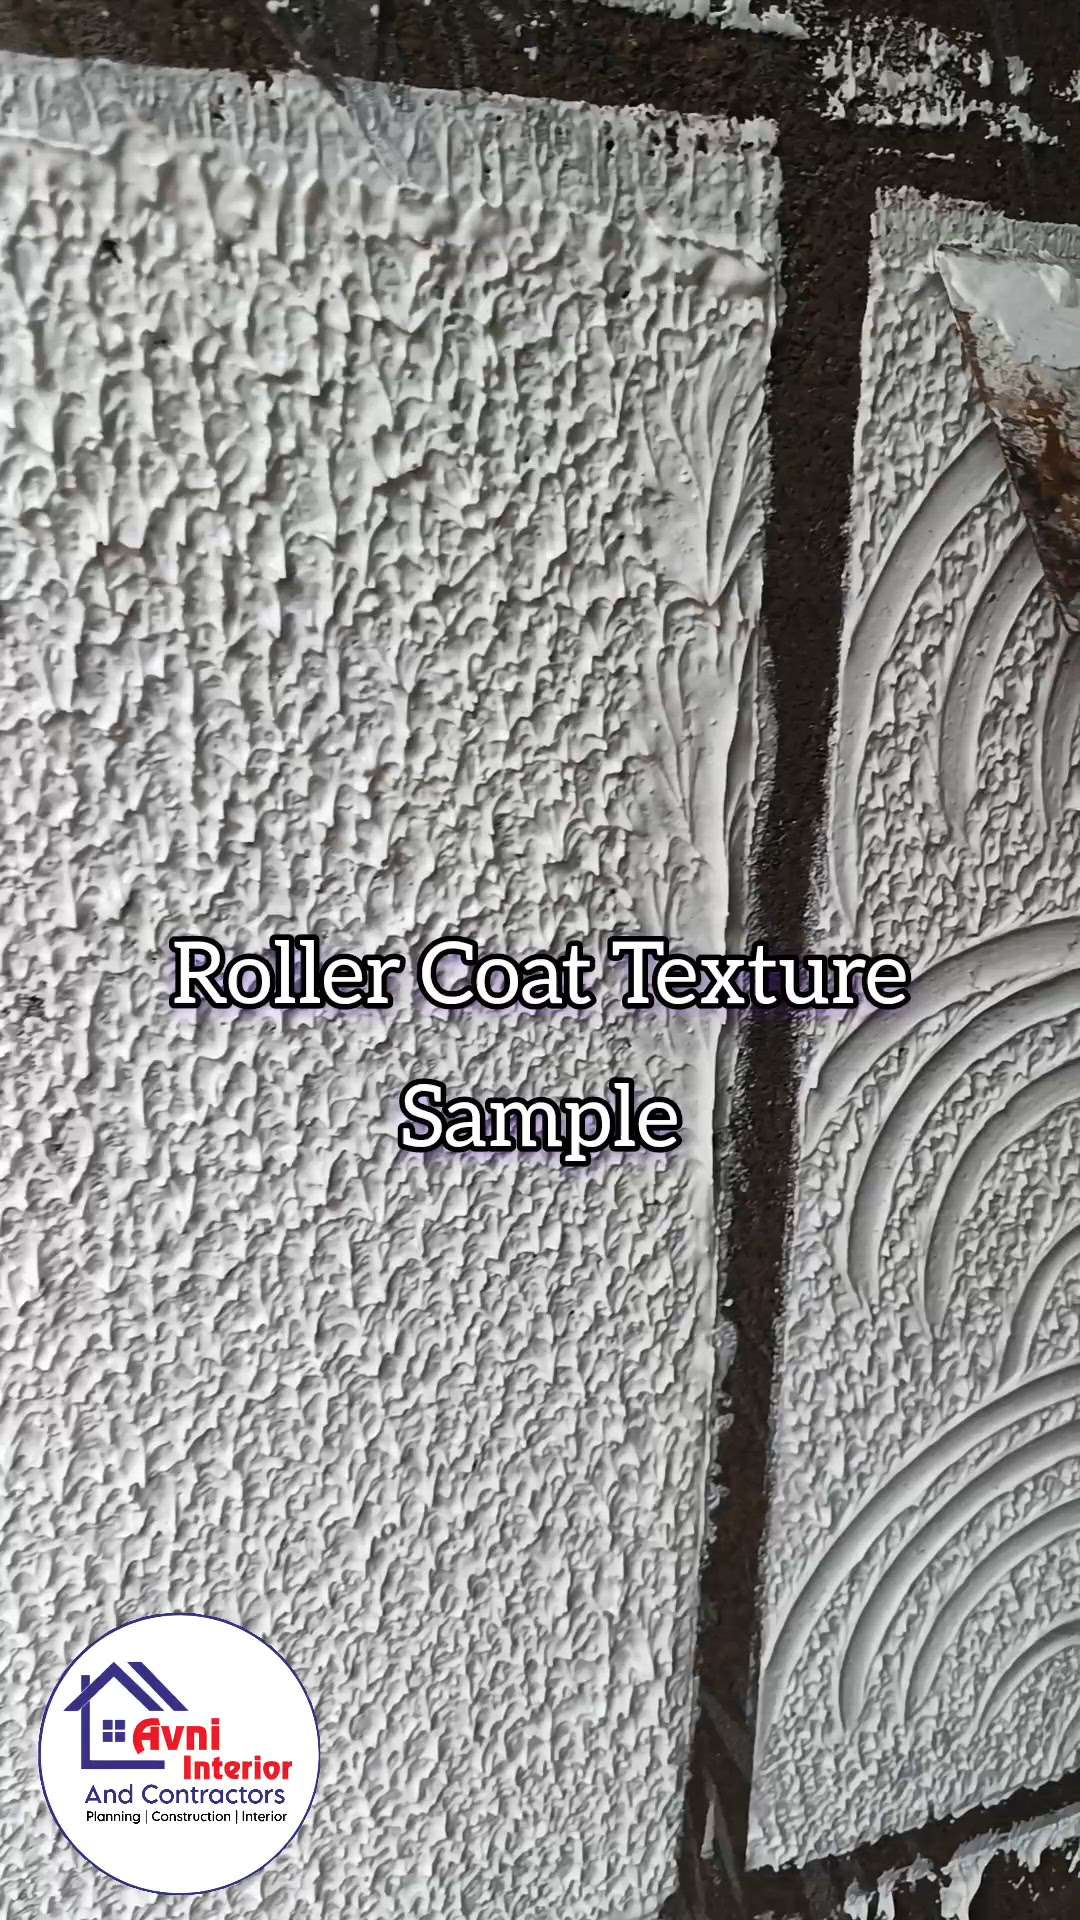 #rollercoat texture #TexturePainting #texture #rustic #rustictexture